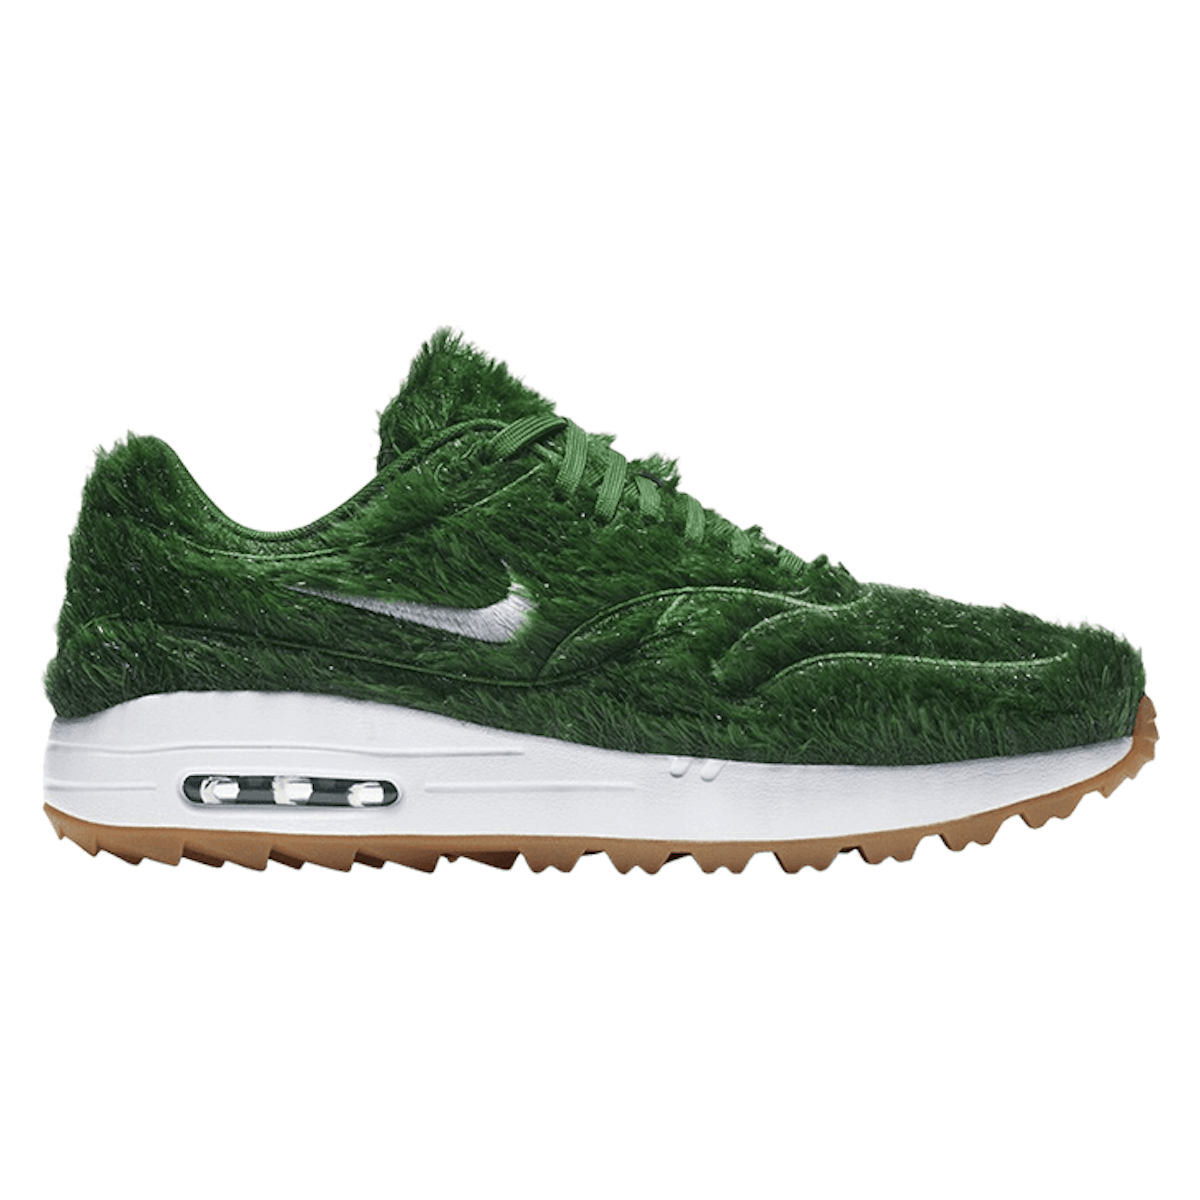 Nike Air Max 1 Golf NRG "Green Grass"